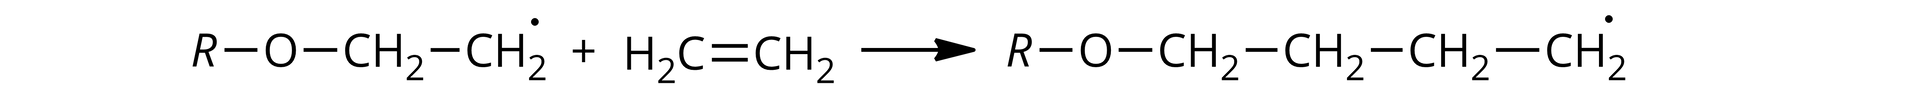 Ilustracja przedstawia równanie reakcji etapu propagacji: R wiązanie pojedyncze O wiązanie pojedyncze &lt;math aria‑label="ce ha indeks dolny dwa, koniec indeksu"&gt;CH2 wiązanie pojedyncze &lt;math aria‑label="ce ha indeks dolny dwa, koniec indeksu"&gt;CH2 dodać cząsteczka o wzorze: &lt;math aria‑label="ha indeks dolny dwa, koniec indeksu ce"&gt;H2C wiązanie podwójne &lt;math aria‑label="ce ha indeks dolny dwa, koniec indeksu"&gt;CH2, strzałka w prawo, R wiązanie pojedyncze O wiązanie pojedyncze: tu szereg czterech grup &lt;math aria‑label="ce ha indeks dolny dwa, koniec indeksu"&gt;CH2 połączonych ze sobą wiązaniem pojedynczym. Węgiel w ostatniej grupie posiada niesparowany elektron.  